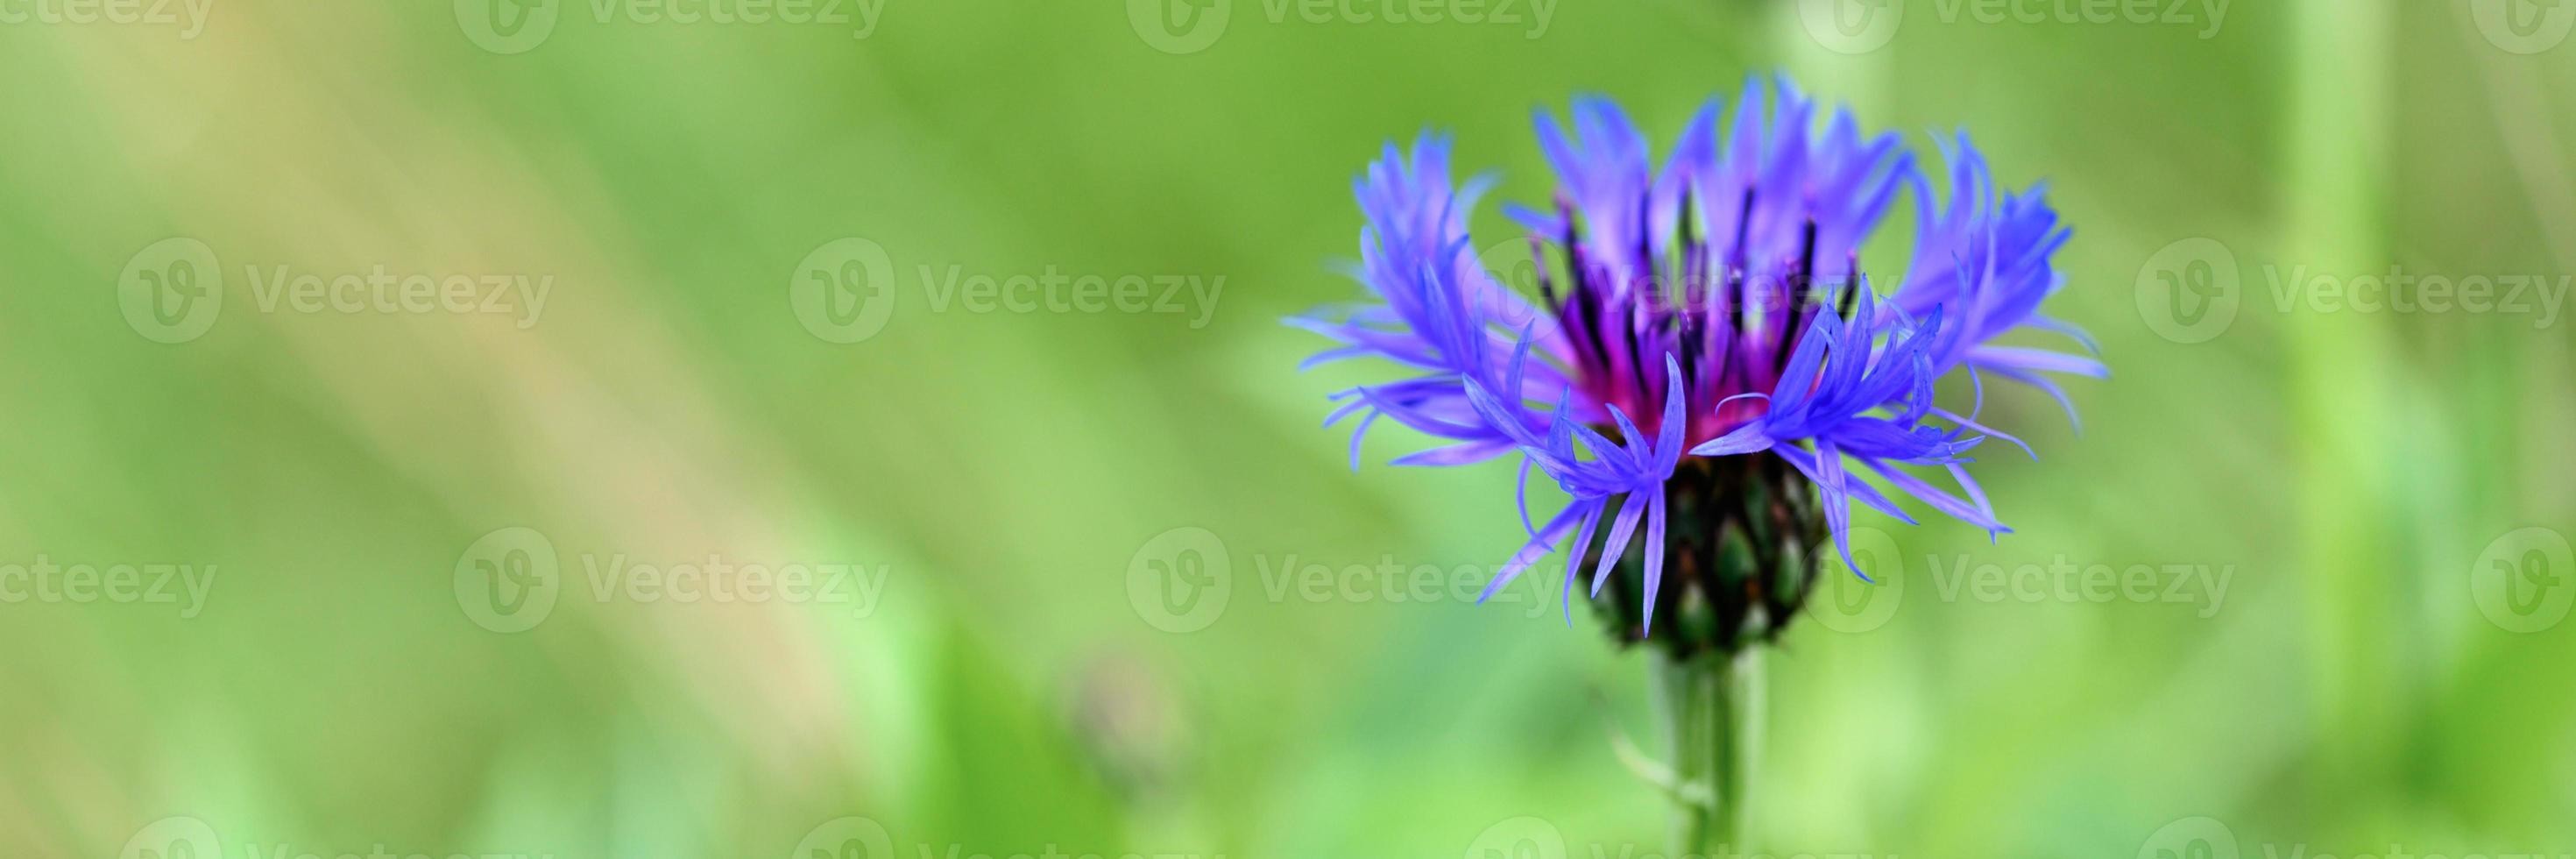 campo de centáurea selvagem com ervas e flores roxas azuis foto